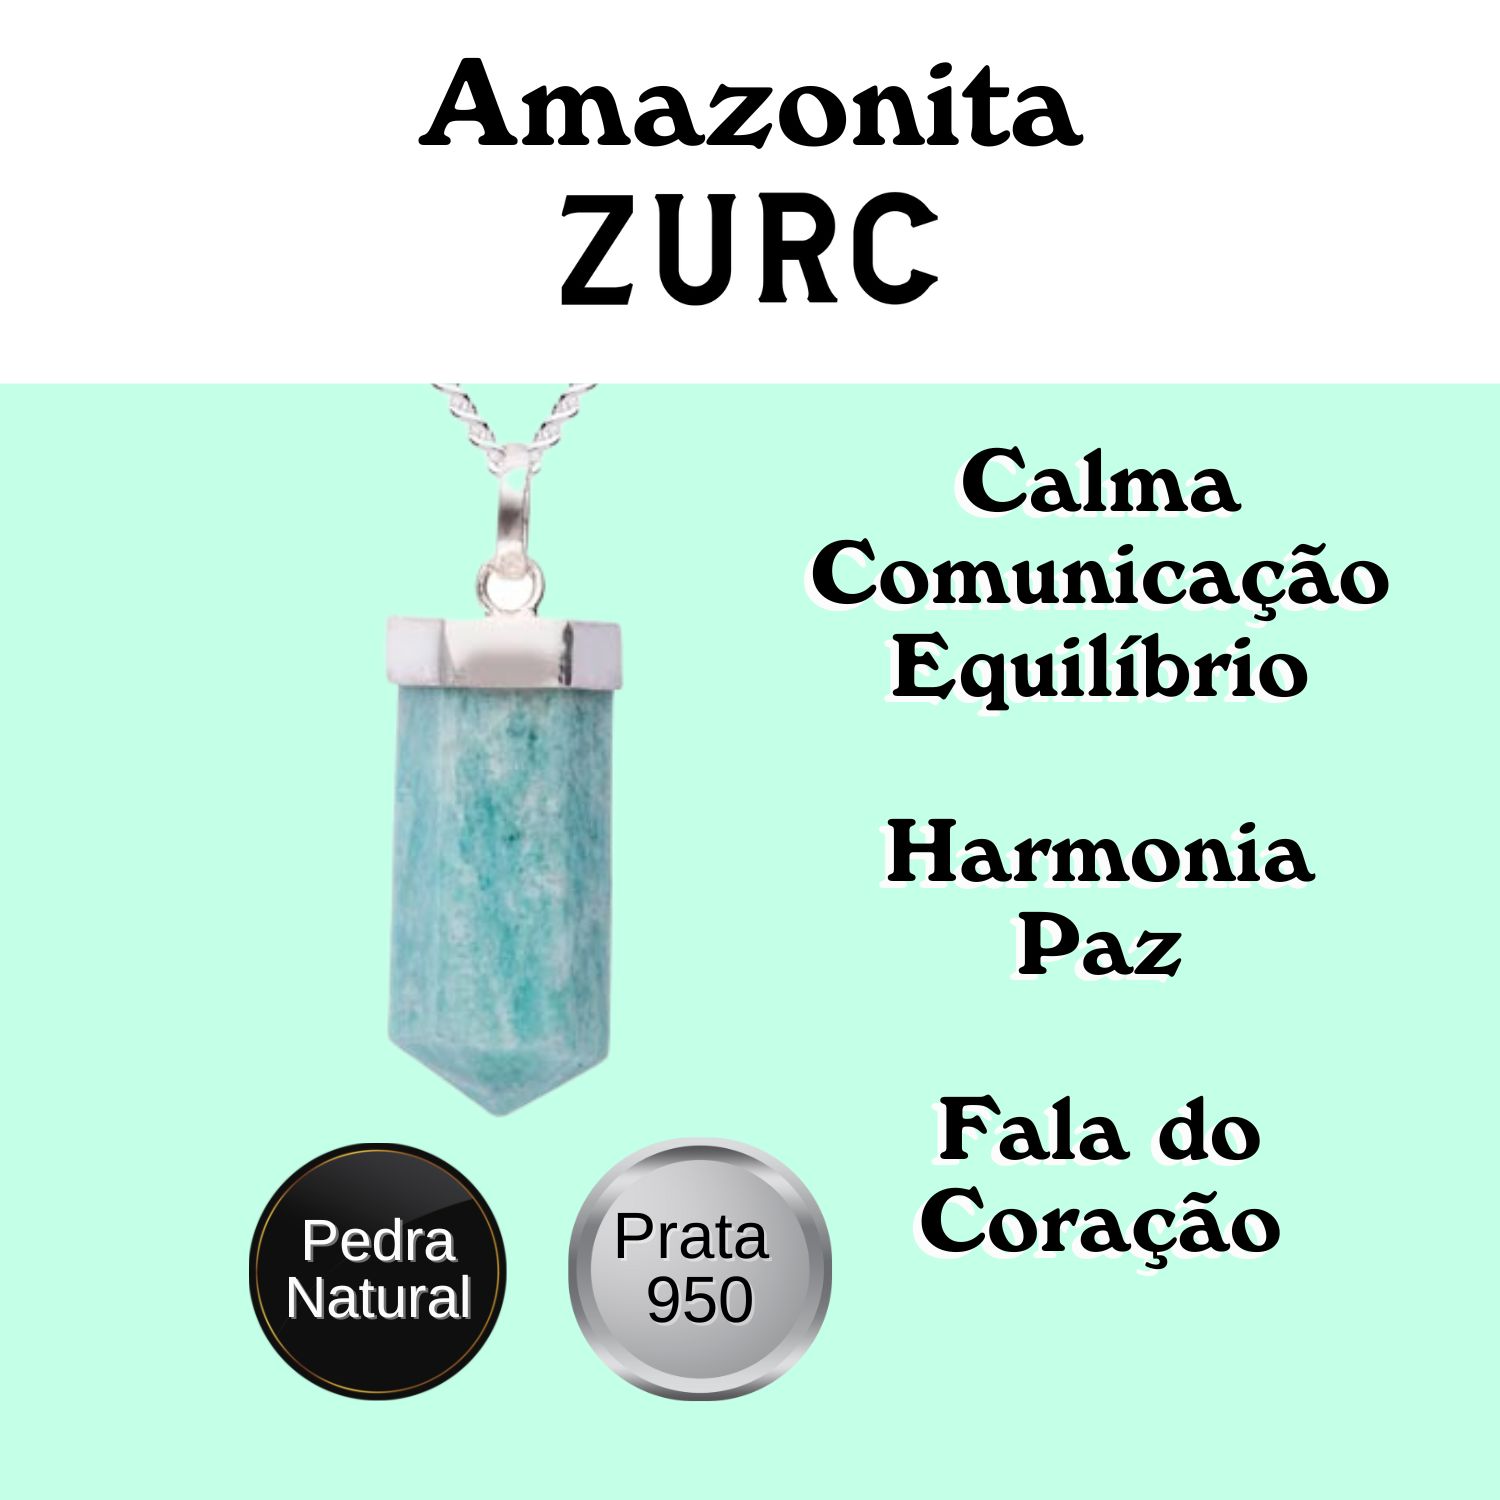 Pingente de Prata Nobre Alta Joalheria Certificado Ponta Pedra Natural Amazonita Pequeno